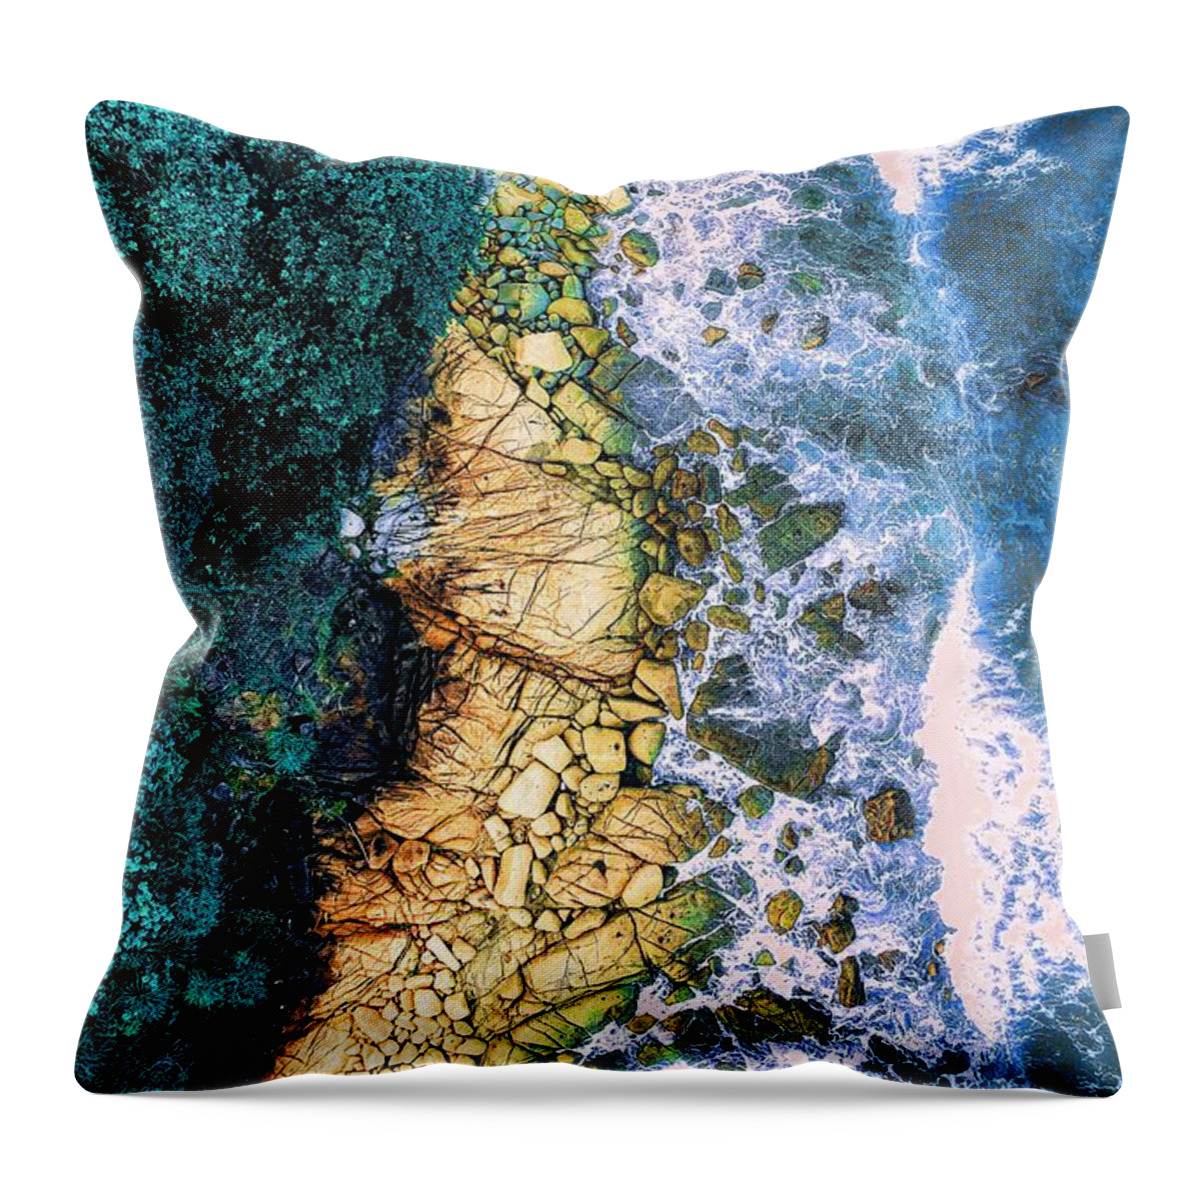 Ocean Throw Pillow featuring the digital art Waves Interrupted by David Luebbert